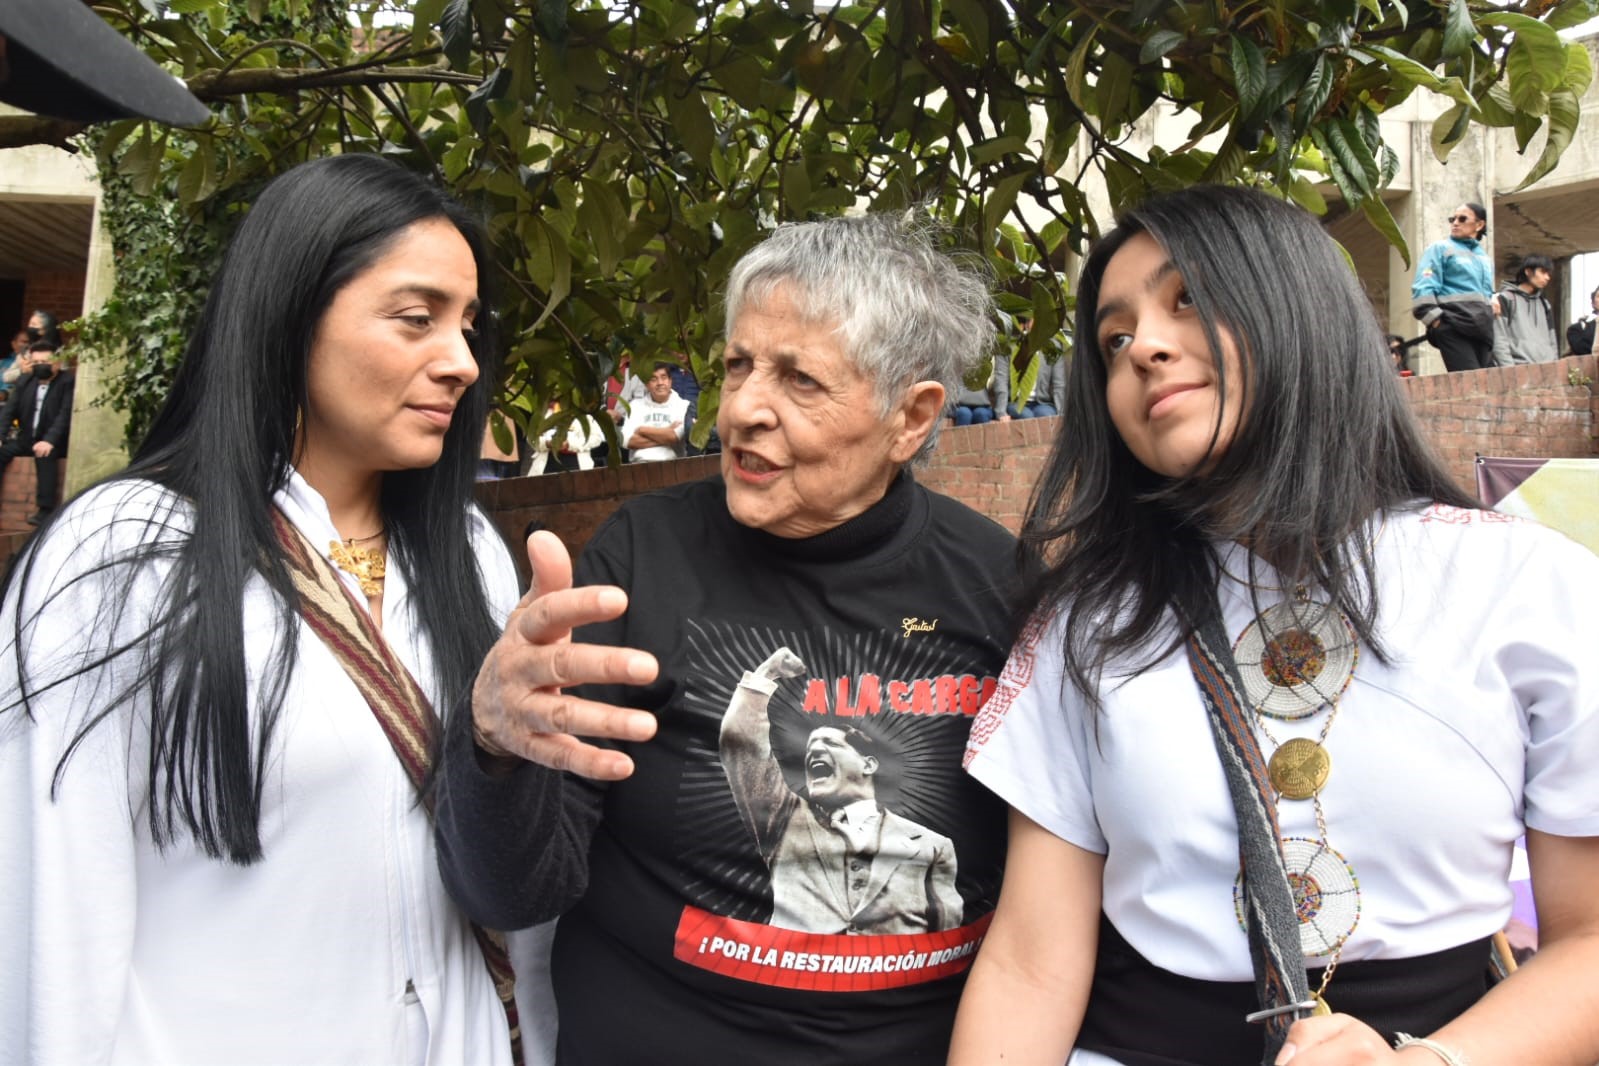 Fotografia en la que aparece la concejal Ati Quigua en una plaza acompañada de dos mujeres con las cuales conversa